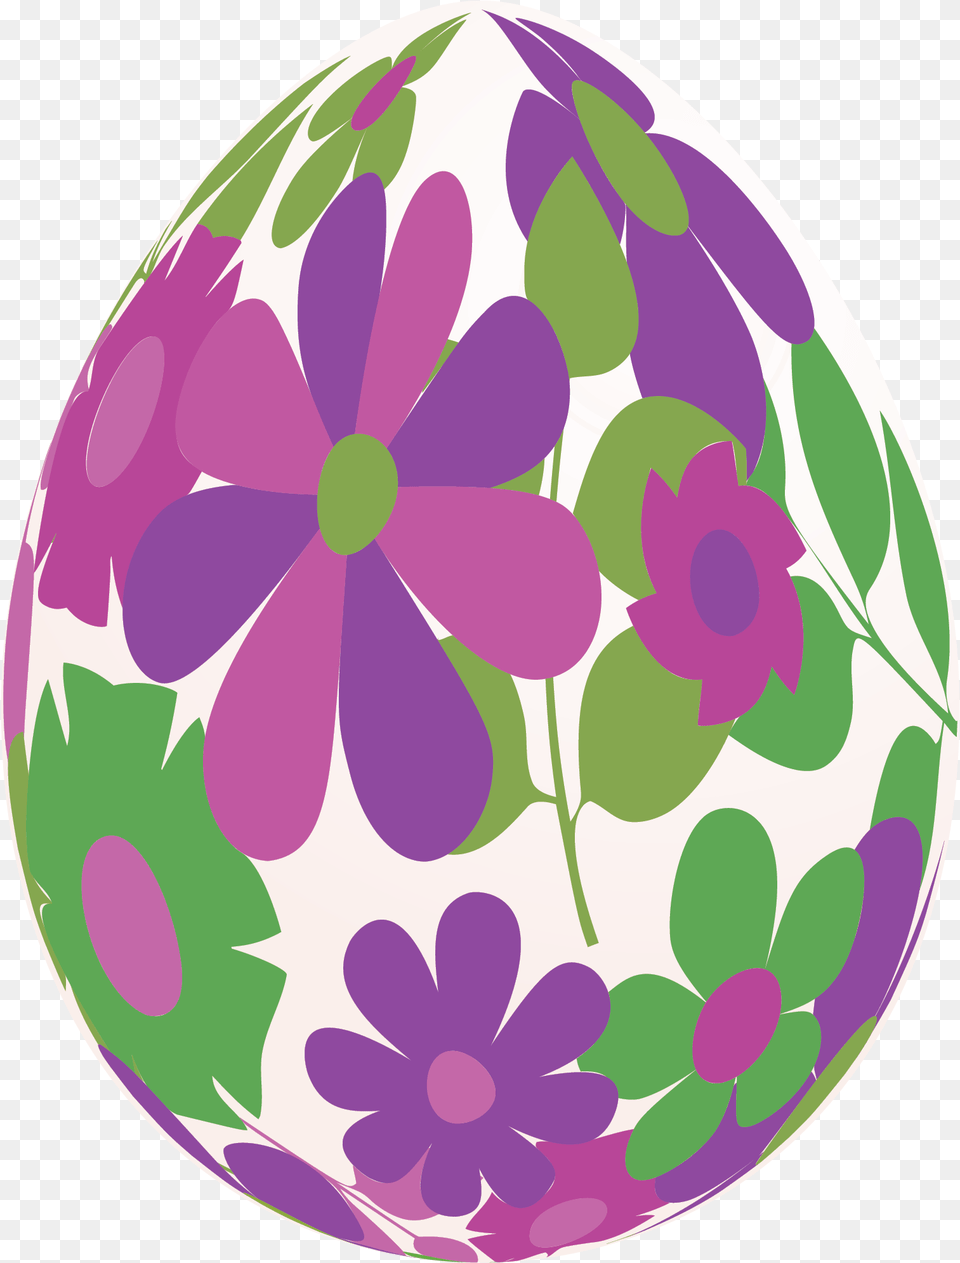 Best Eggs Background Background Easter Eggs, Easter Egg, Egg, Food Free Transparent Png